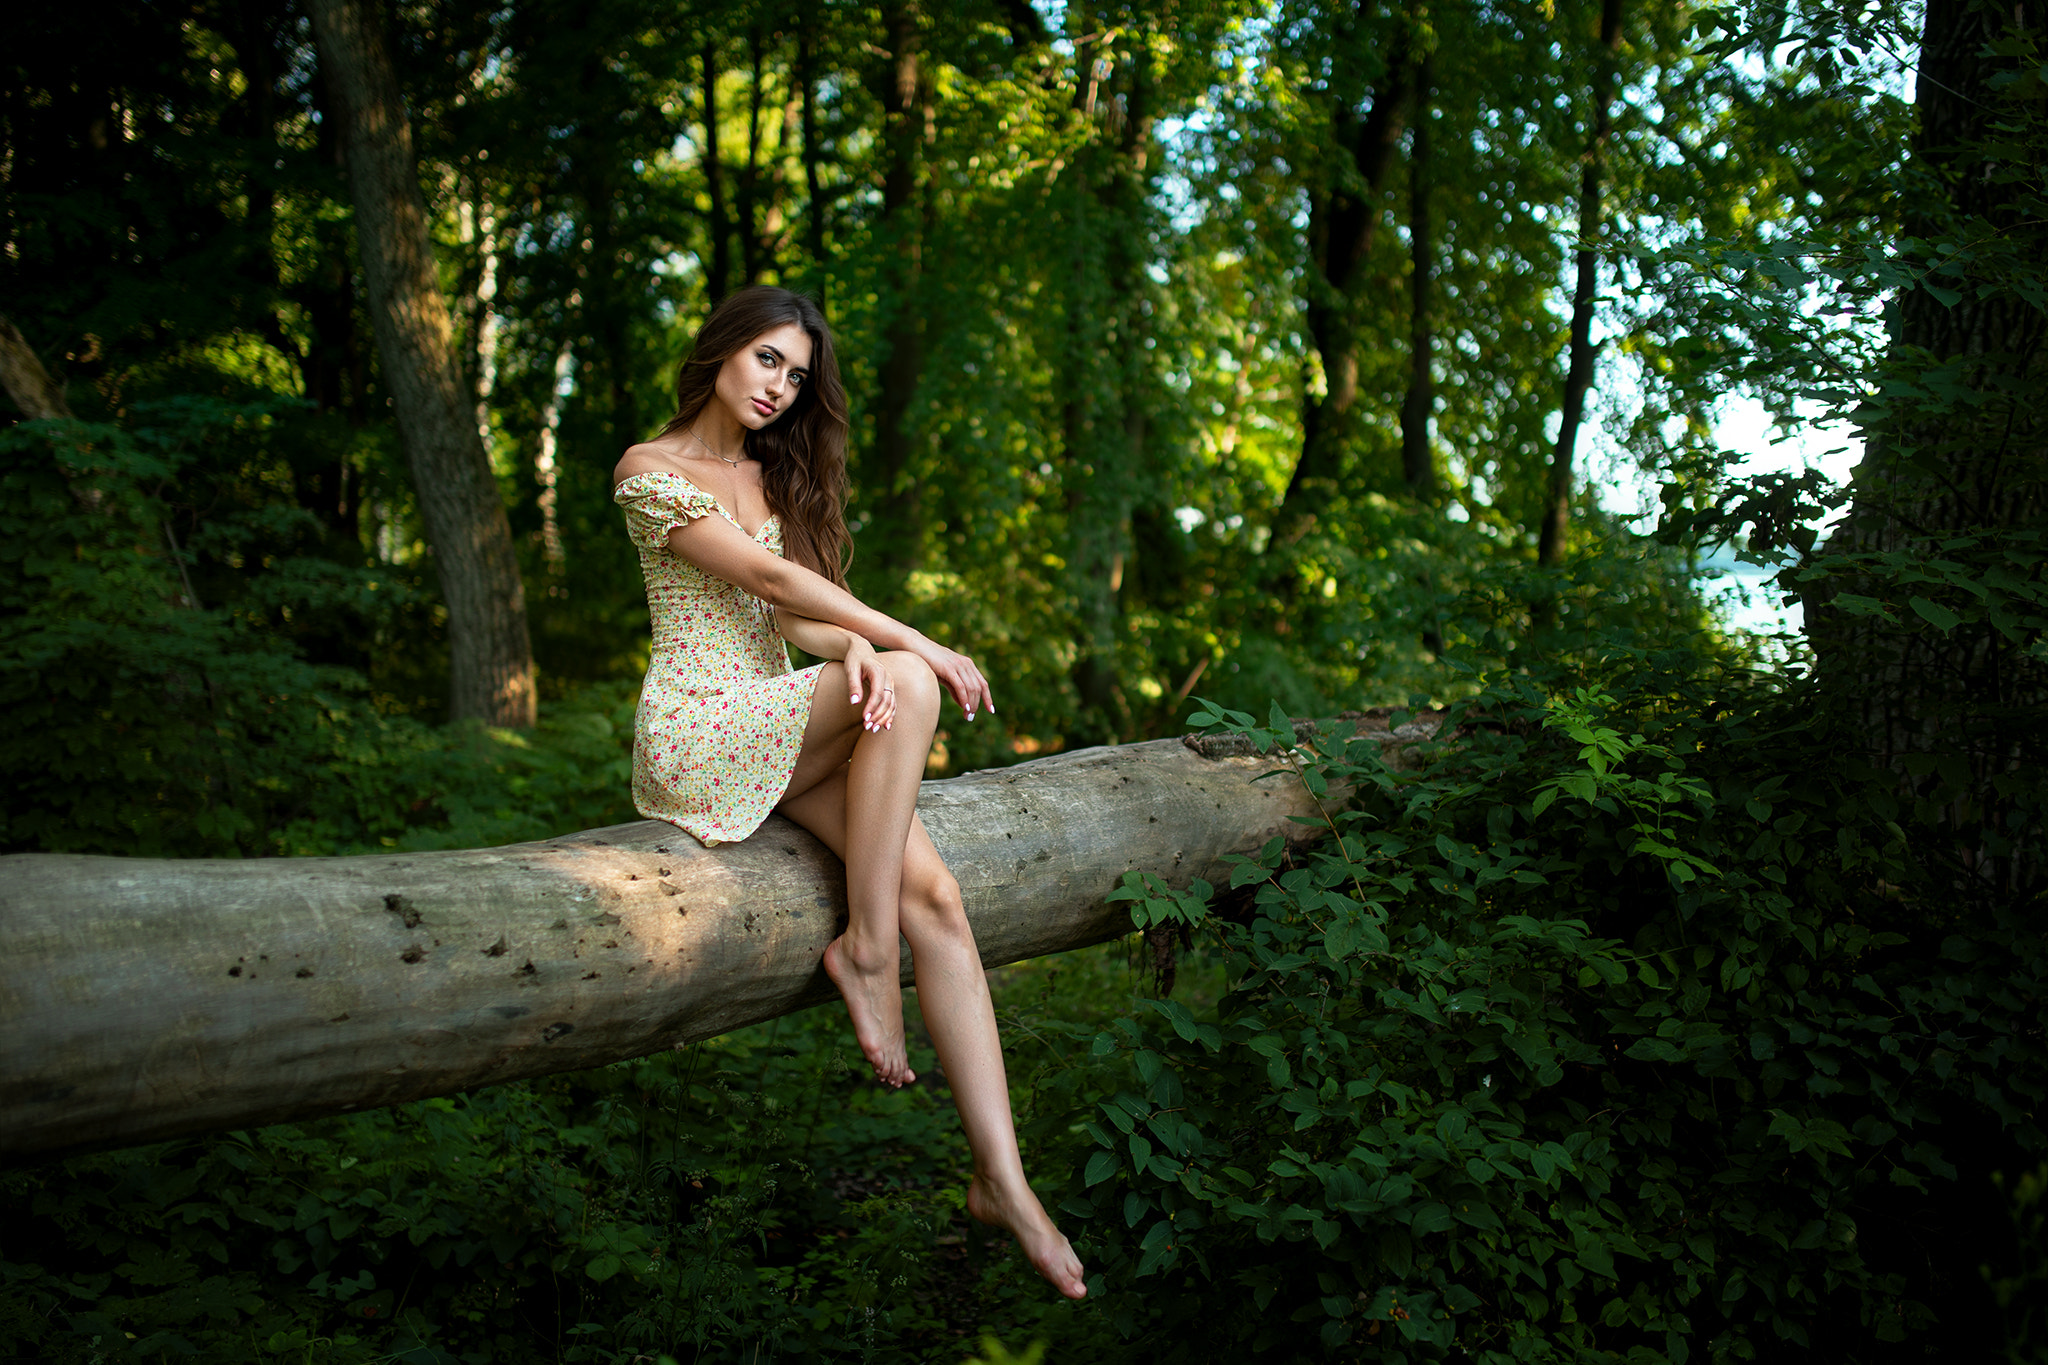 Dmitry Shulgin Women Brunette Long Hair Dress Legs Barefoot Nature Forest Model Log Tree Trunk Women 2048x1365